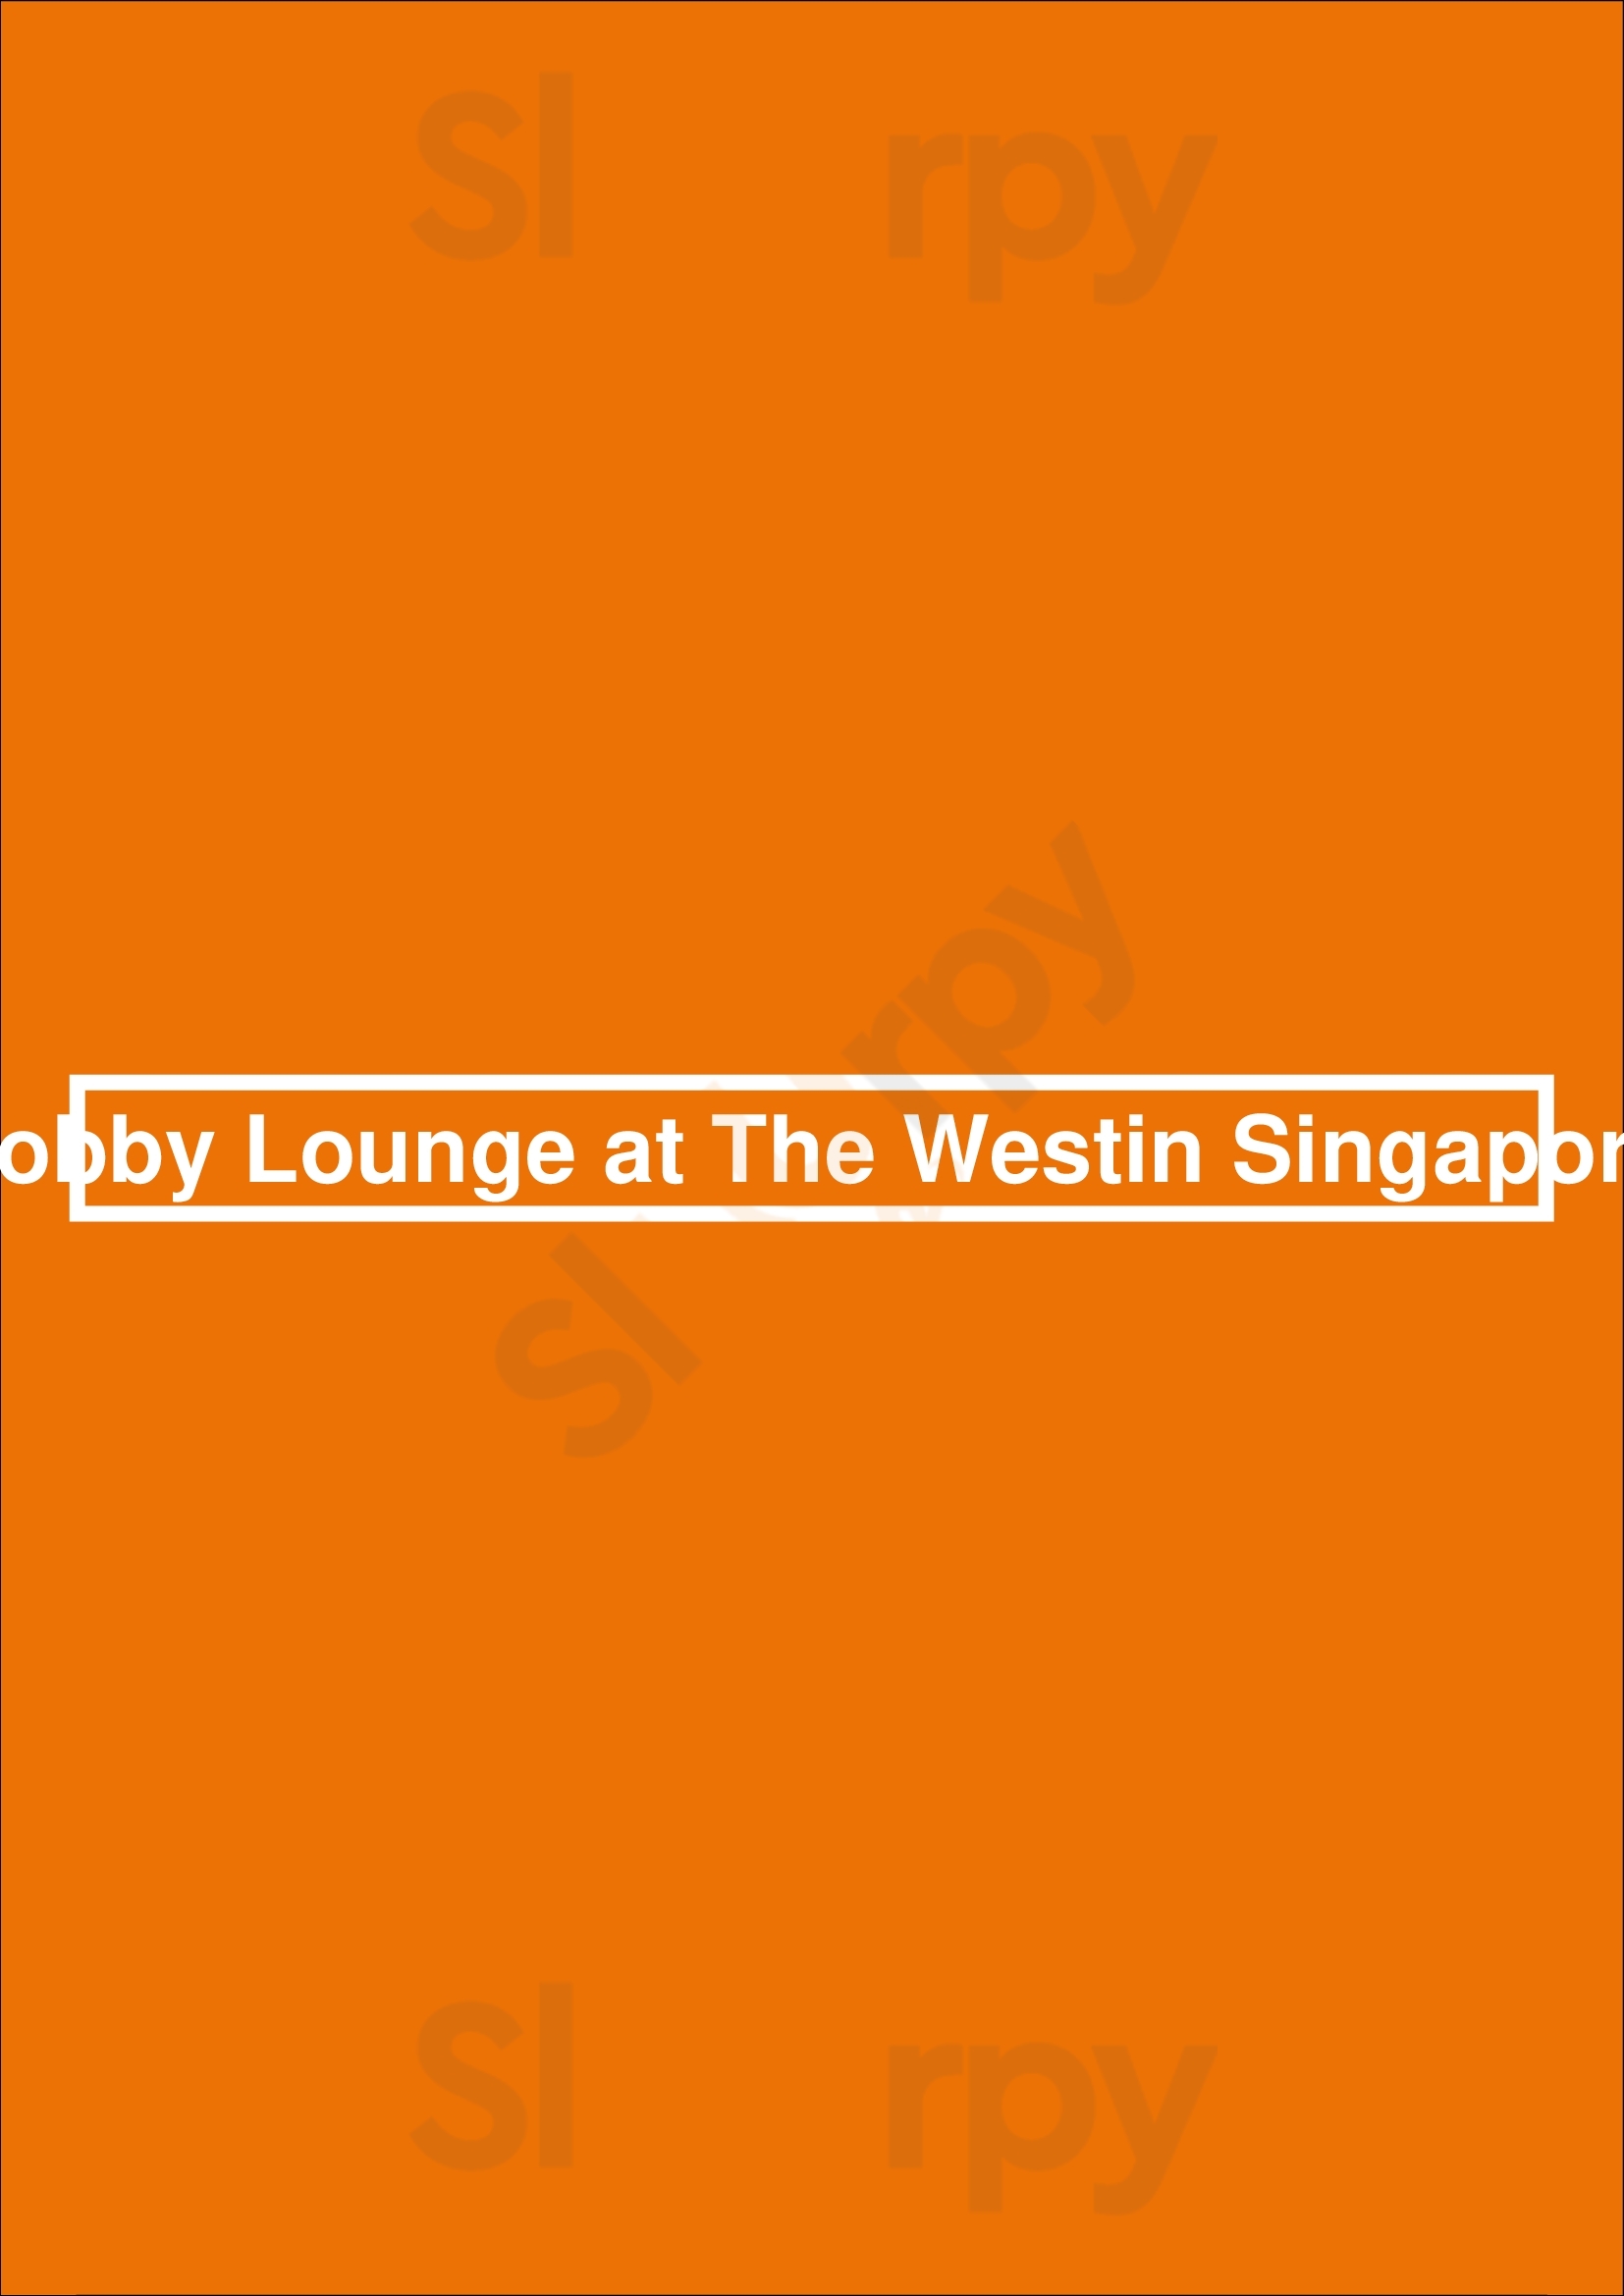 Lobby Lounge At The Westin Singapore Singapore Menu - 1